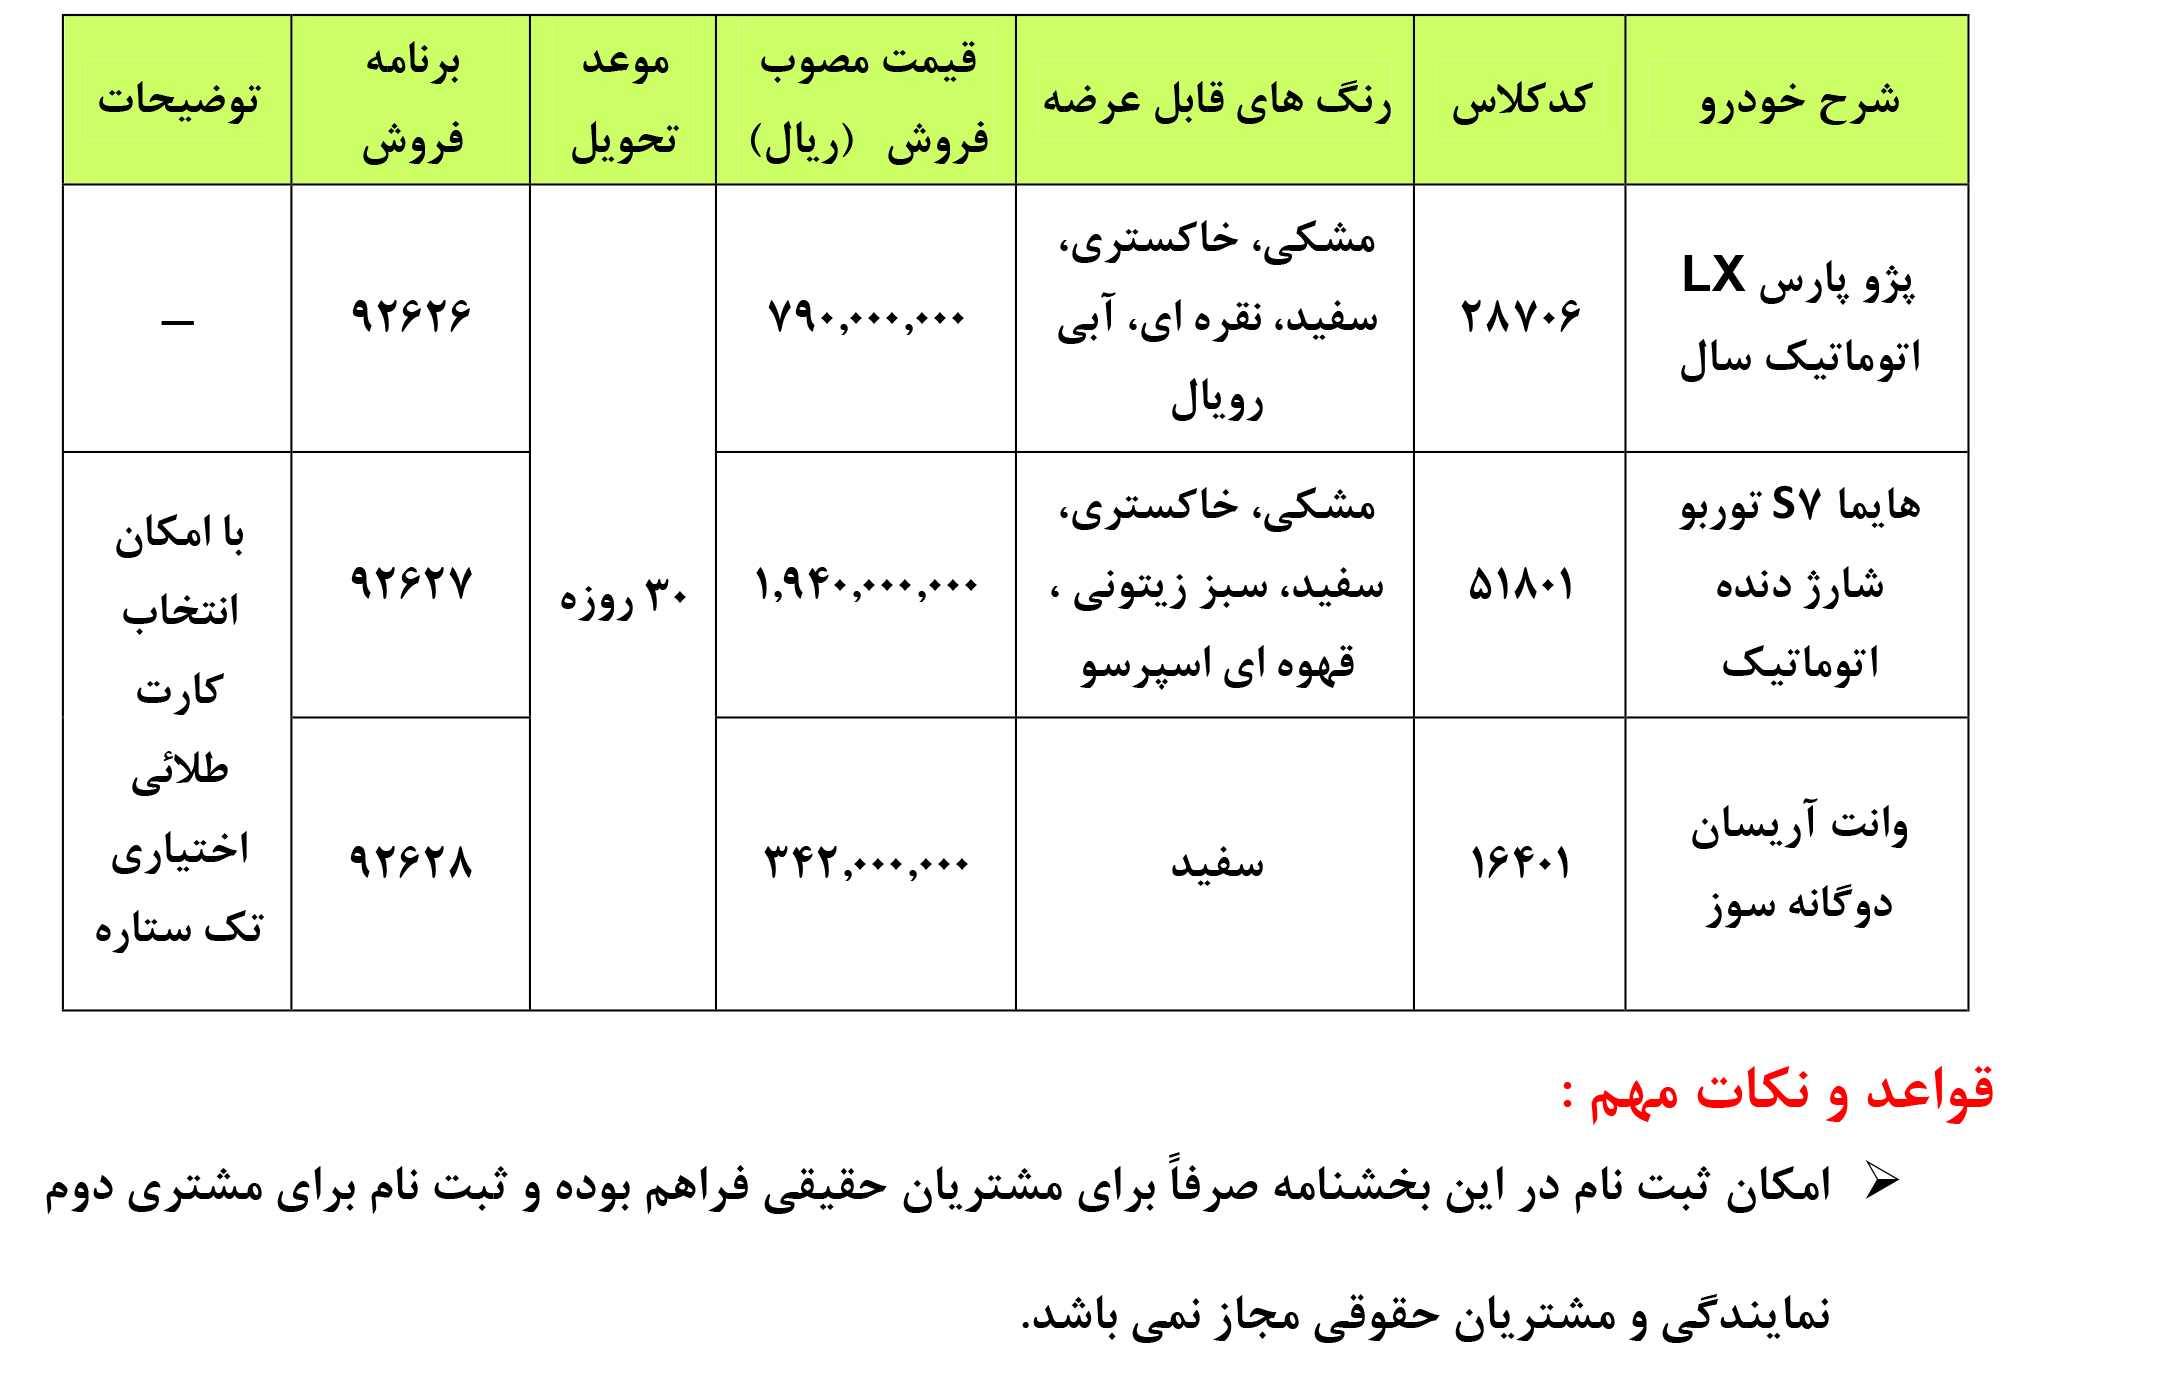 آغاز طرح فروش جدید ایران خودرو از امروز 26 آذر (از فروش فوری تا پیش فروش)